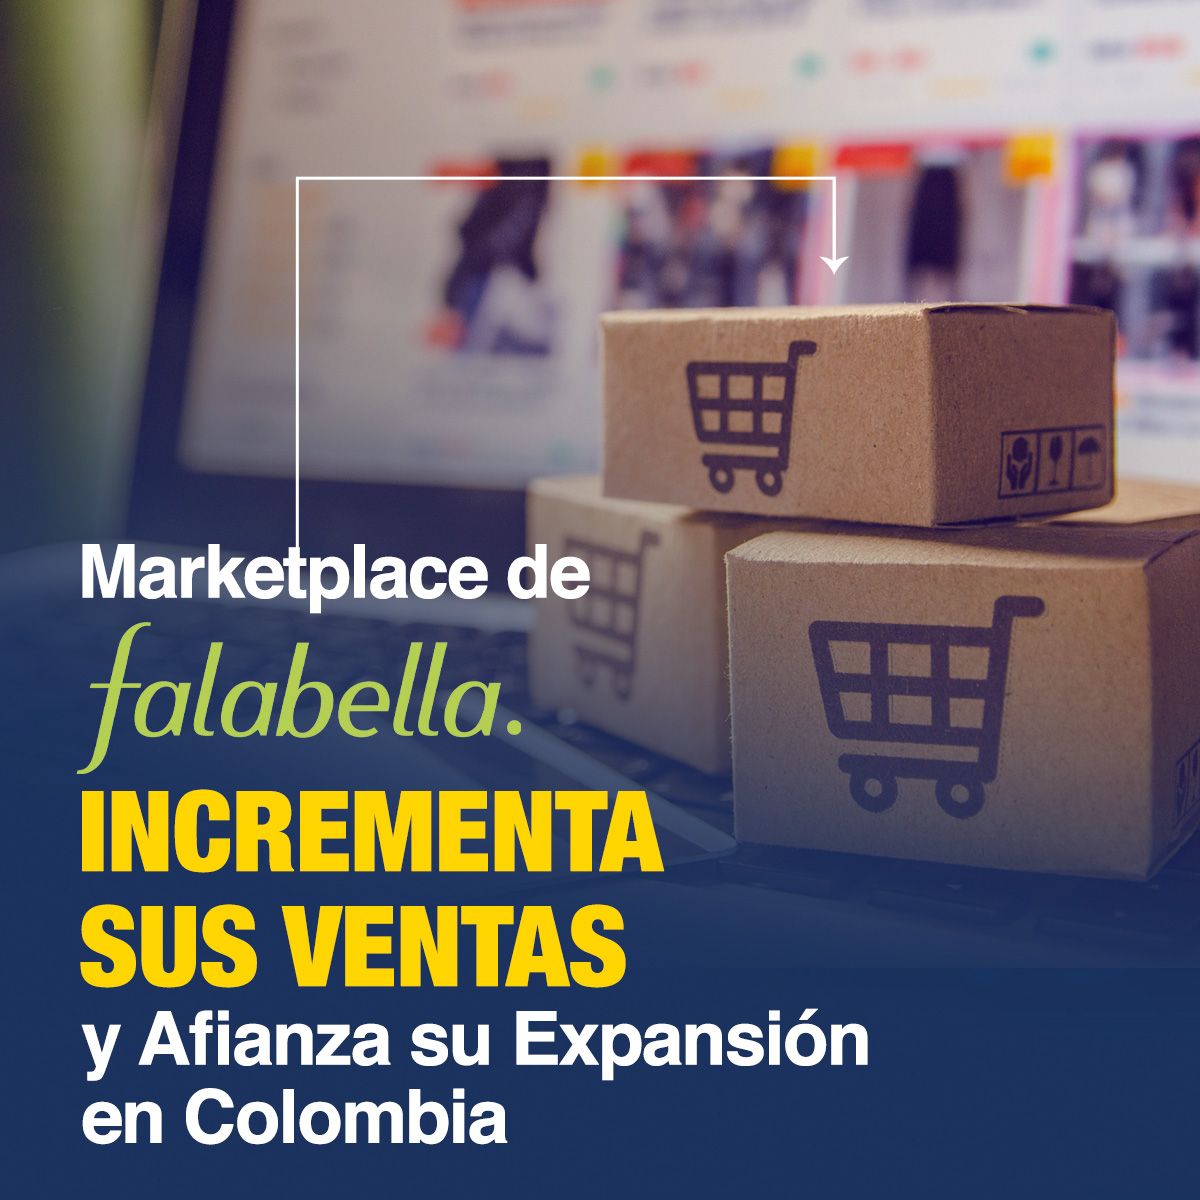 Marketplace de Falabella Incrementa sus Ventas y Afianza su Expansión en Colombia